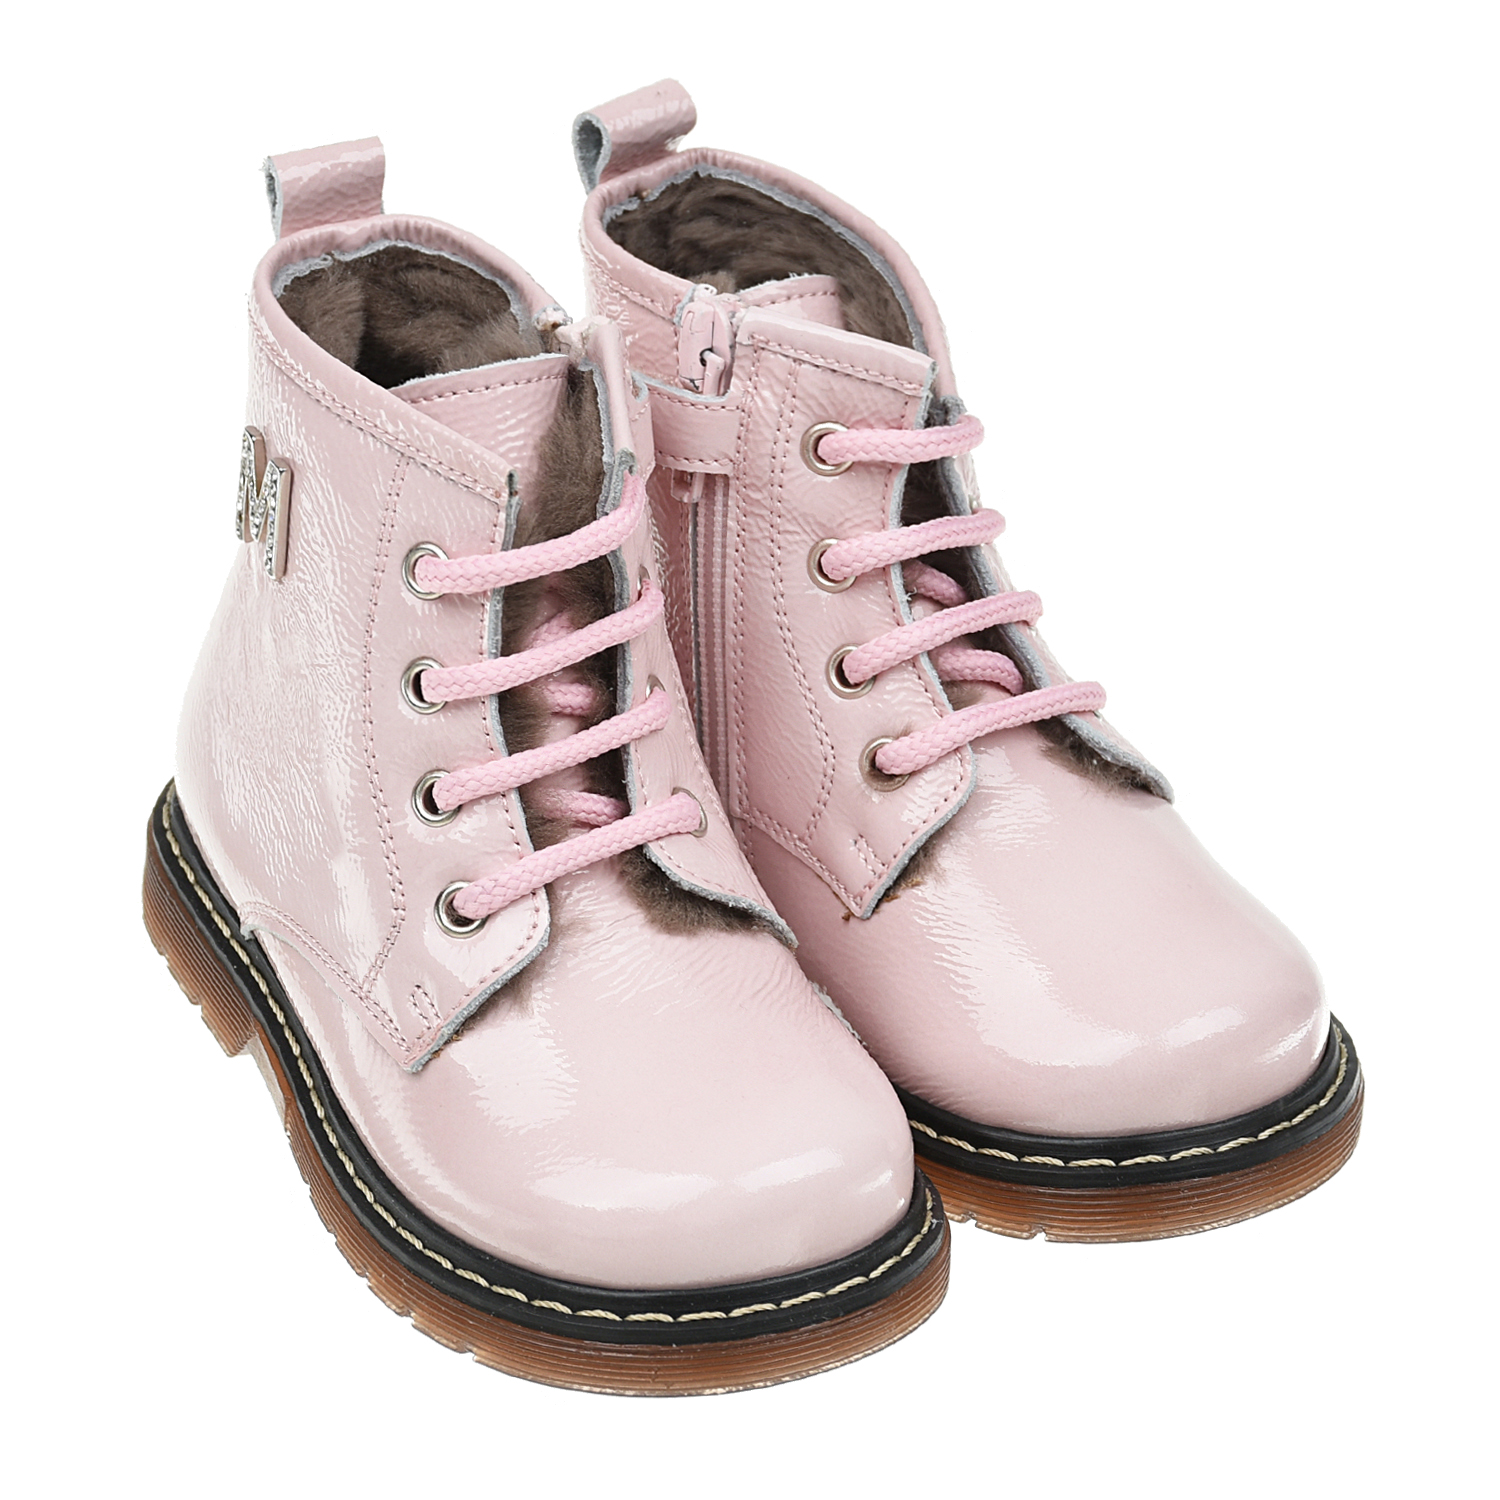 Розовые кожаные ботинки с декором из стразов Monnalisa детские, размер 22, цвет розовый